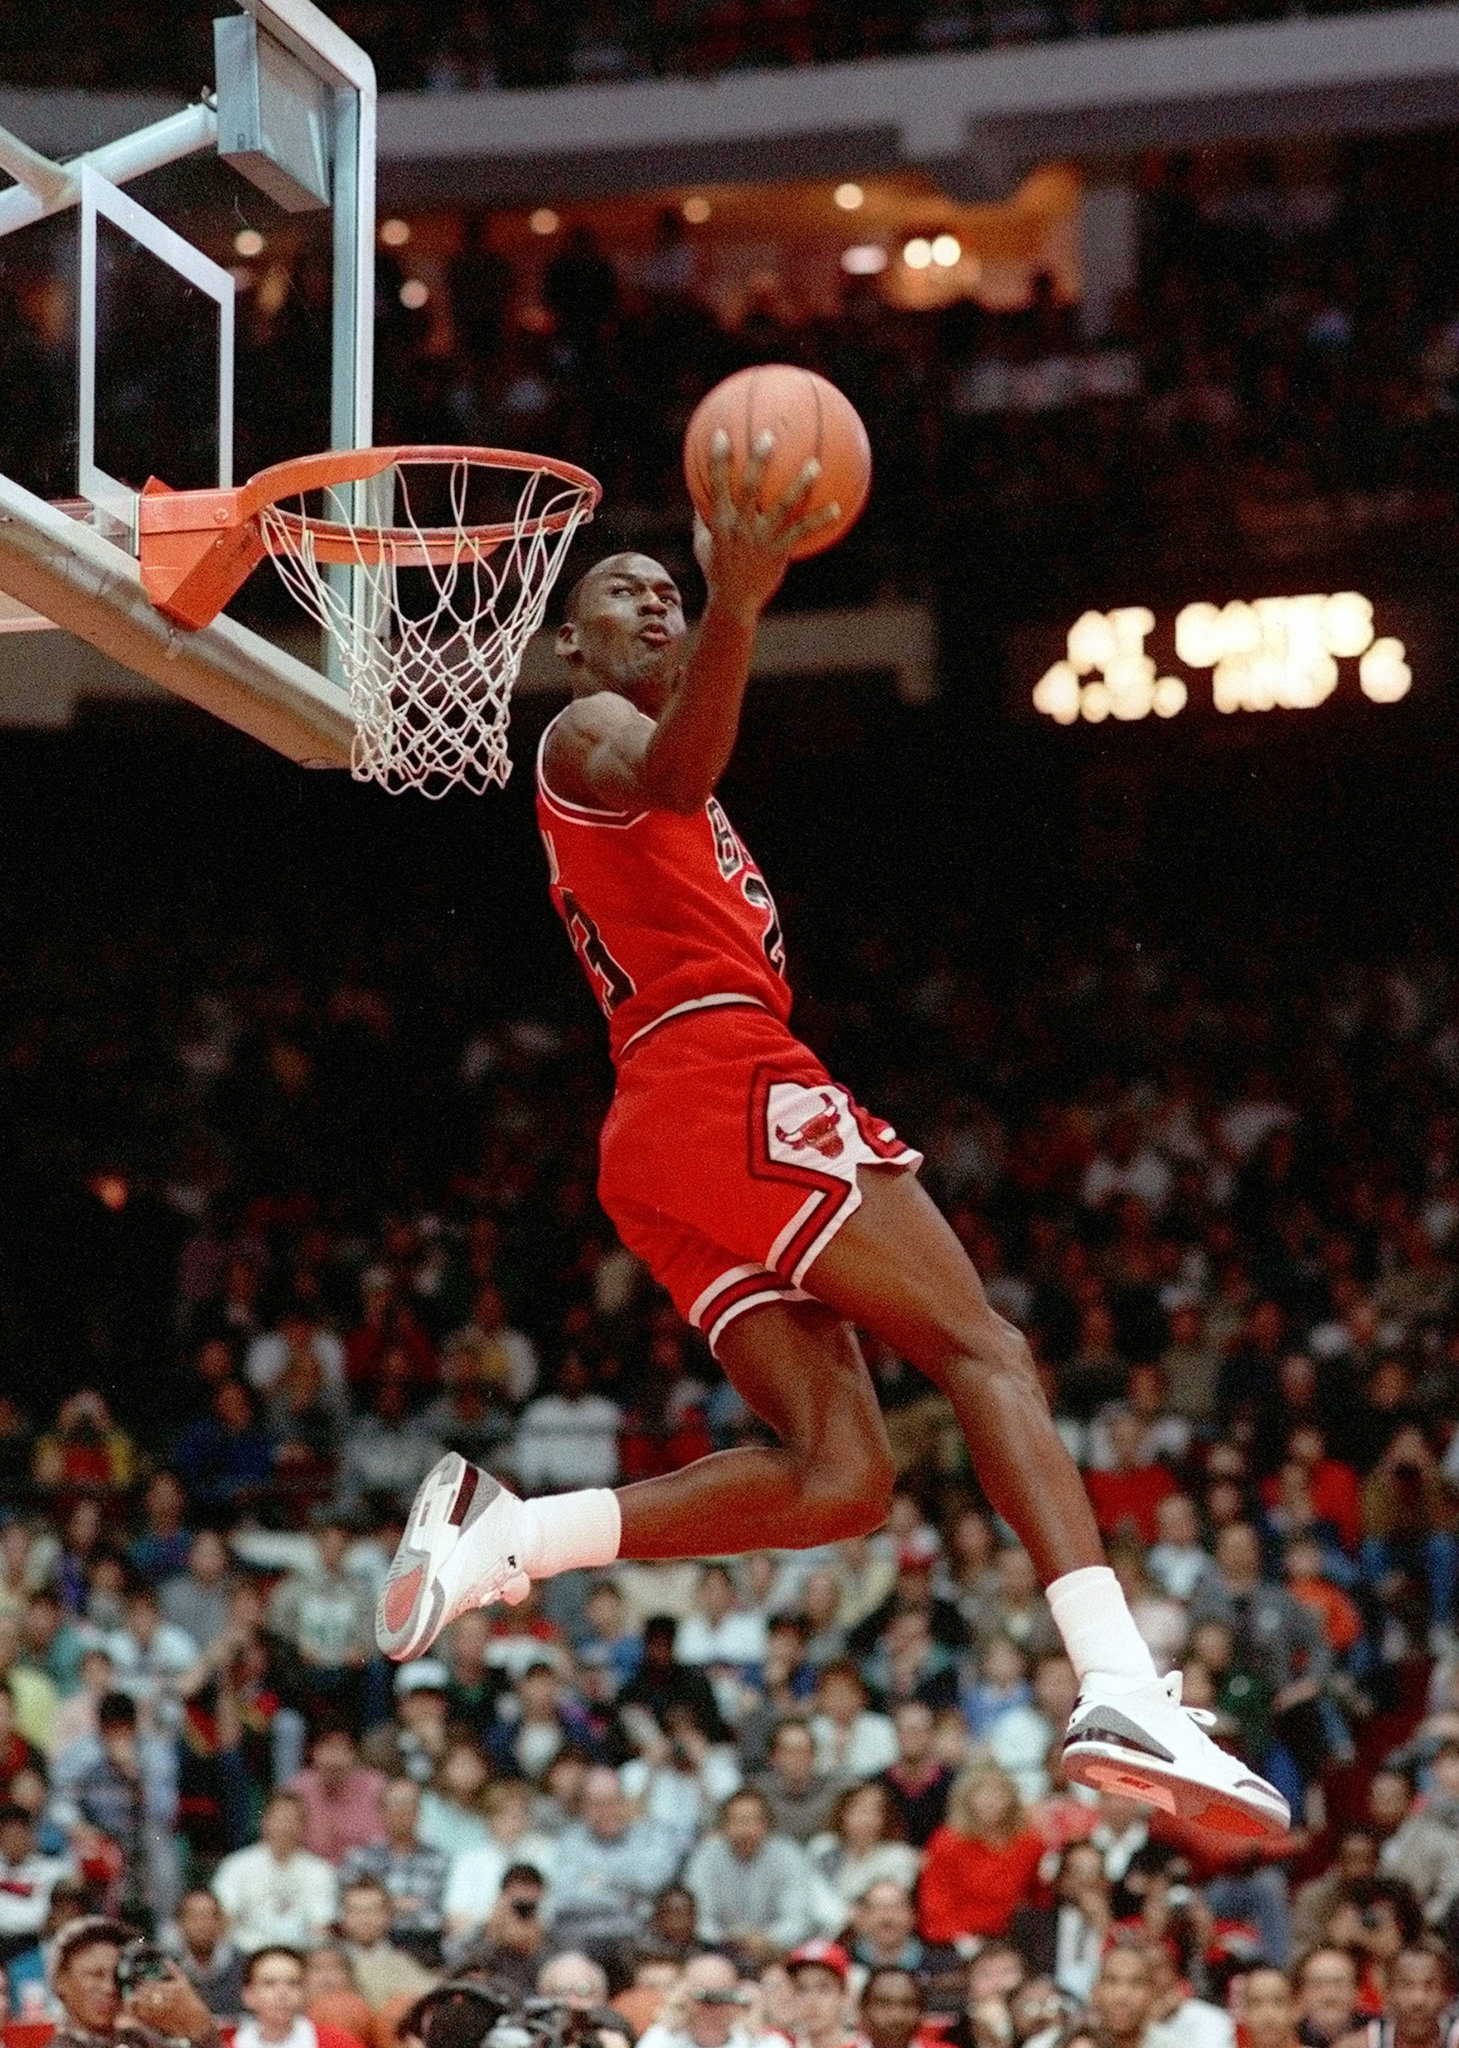 Michael Jordan Supreme Wallpapers